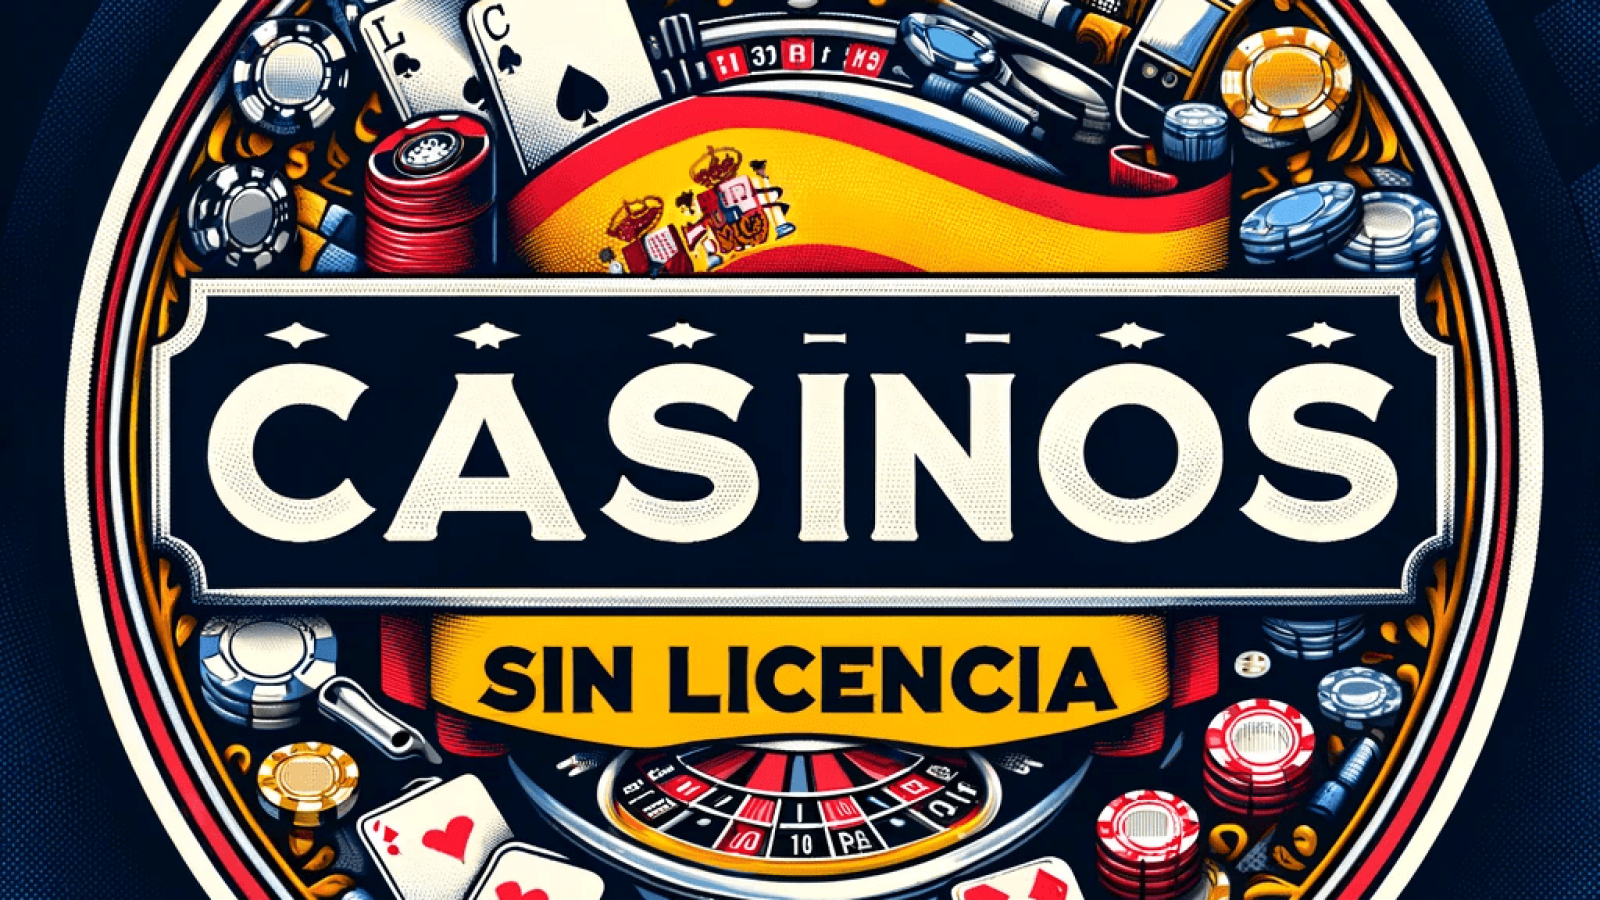 Casino online sin licencia españa